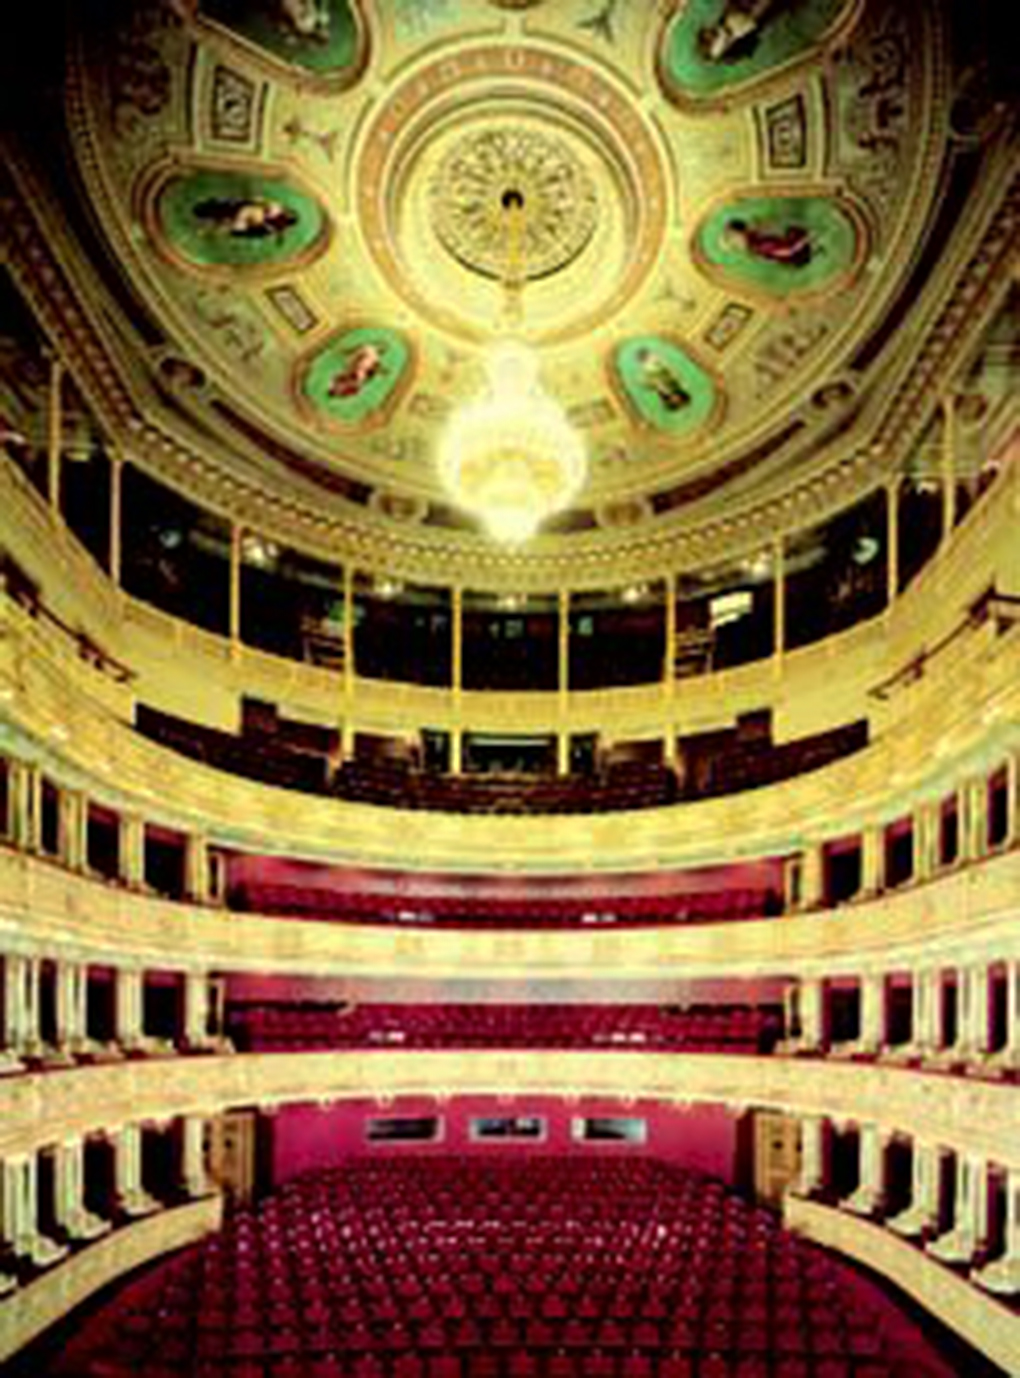 Praga, wnętrze teatru operowego, https://www.czechopera.cz/theatre-Prague_National_Theatre-history-2 – dostęp 27.02.2020